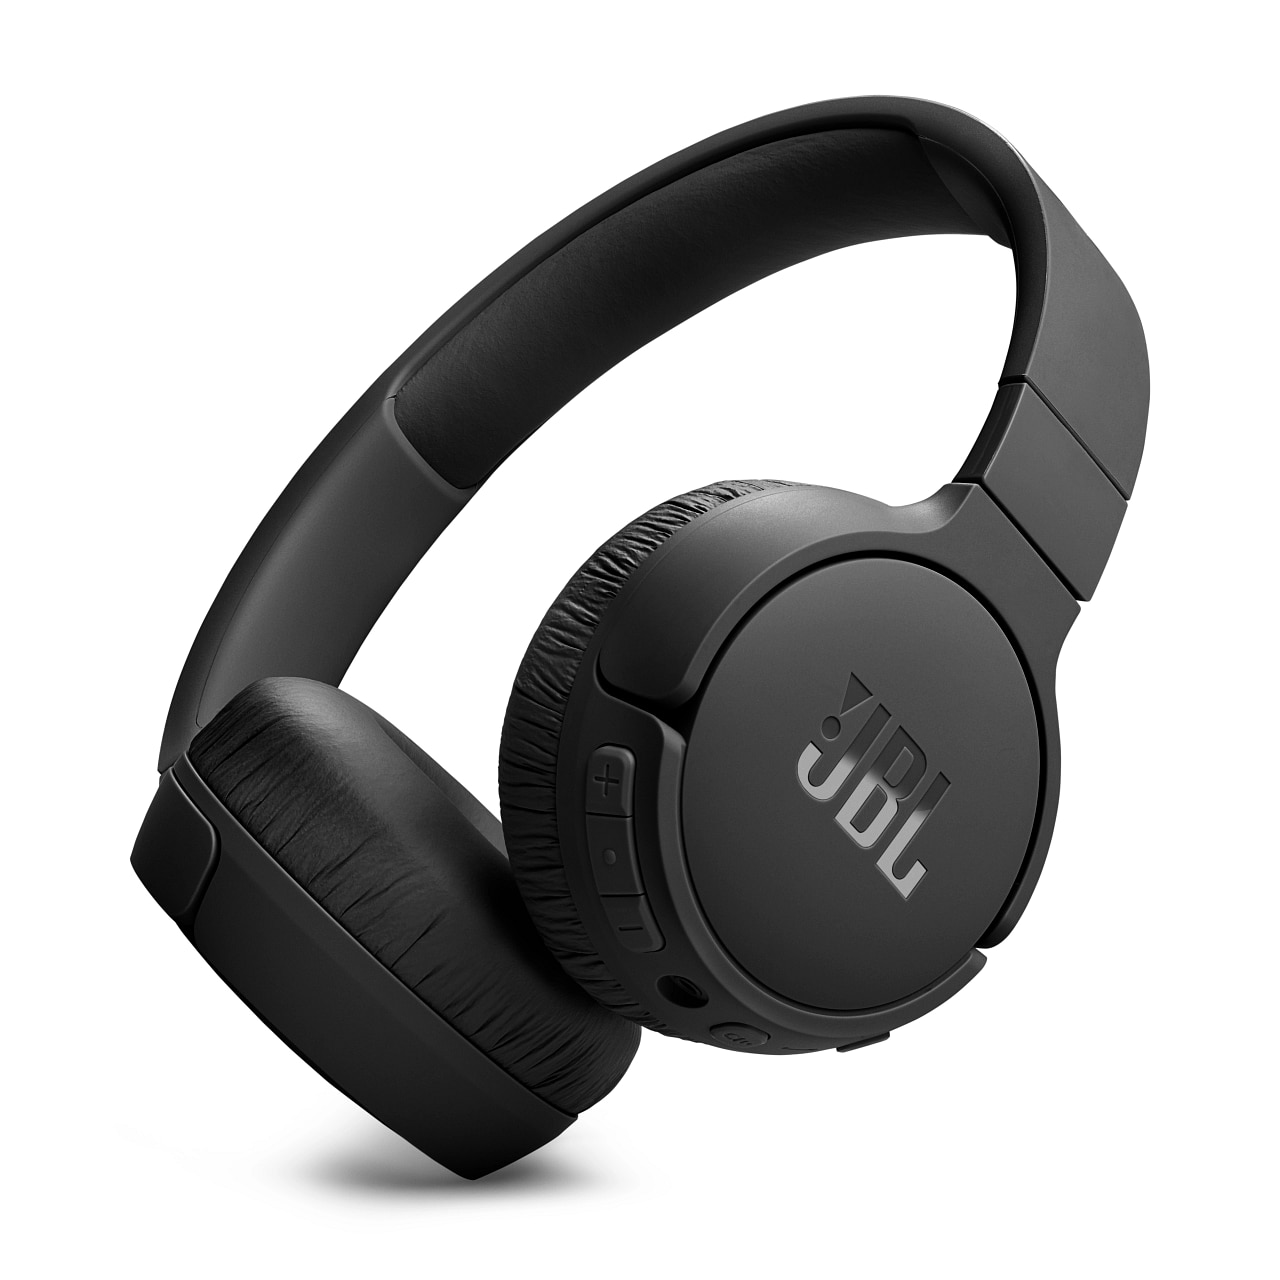 | Cyberport JBL-Kopfhörer kaufen optimierten für Sound